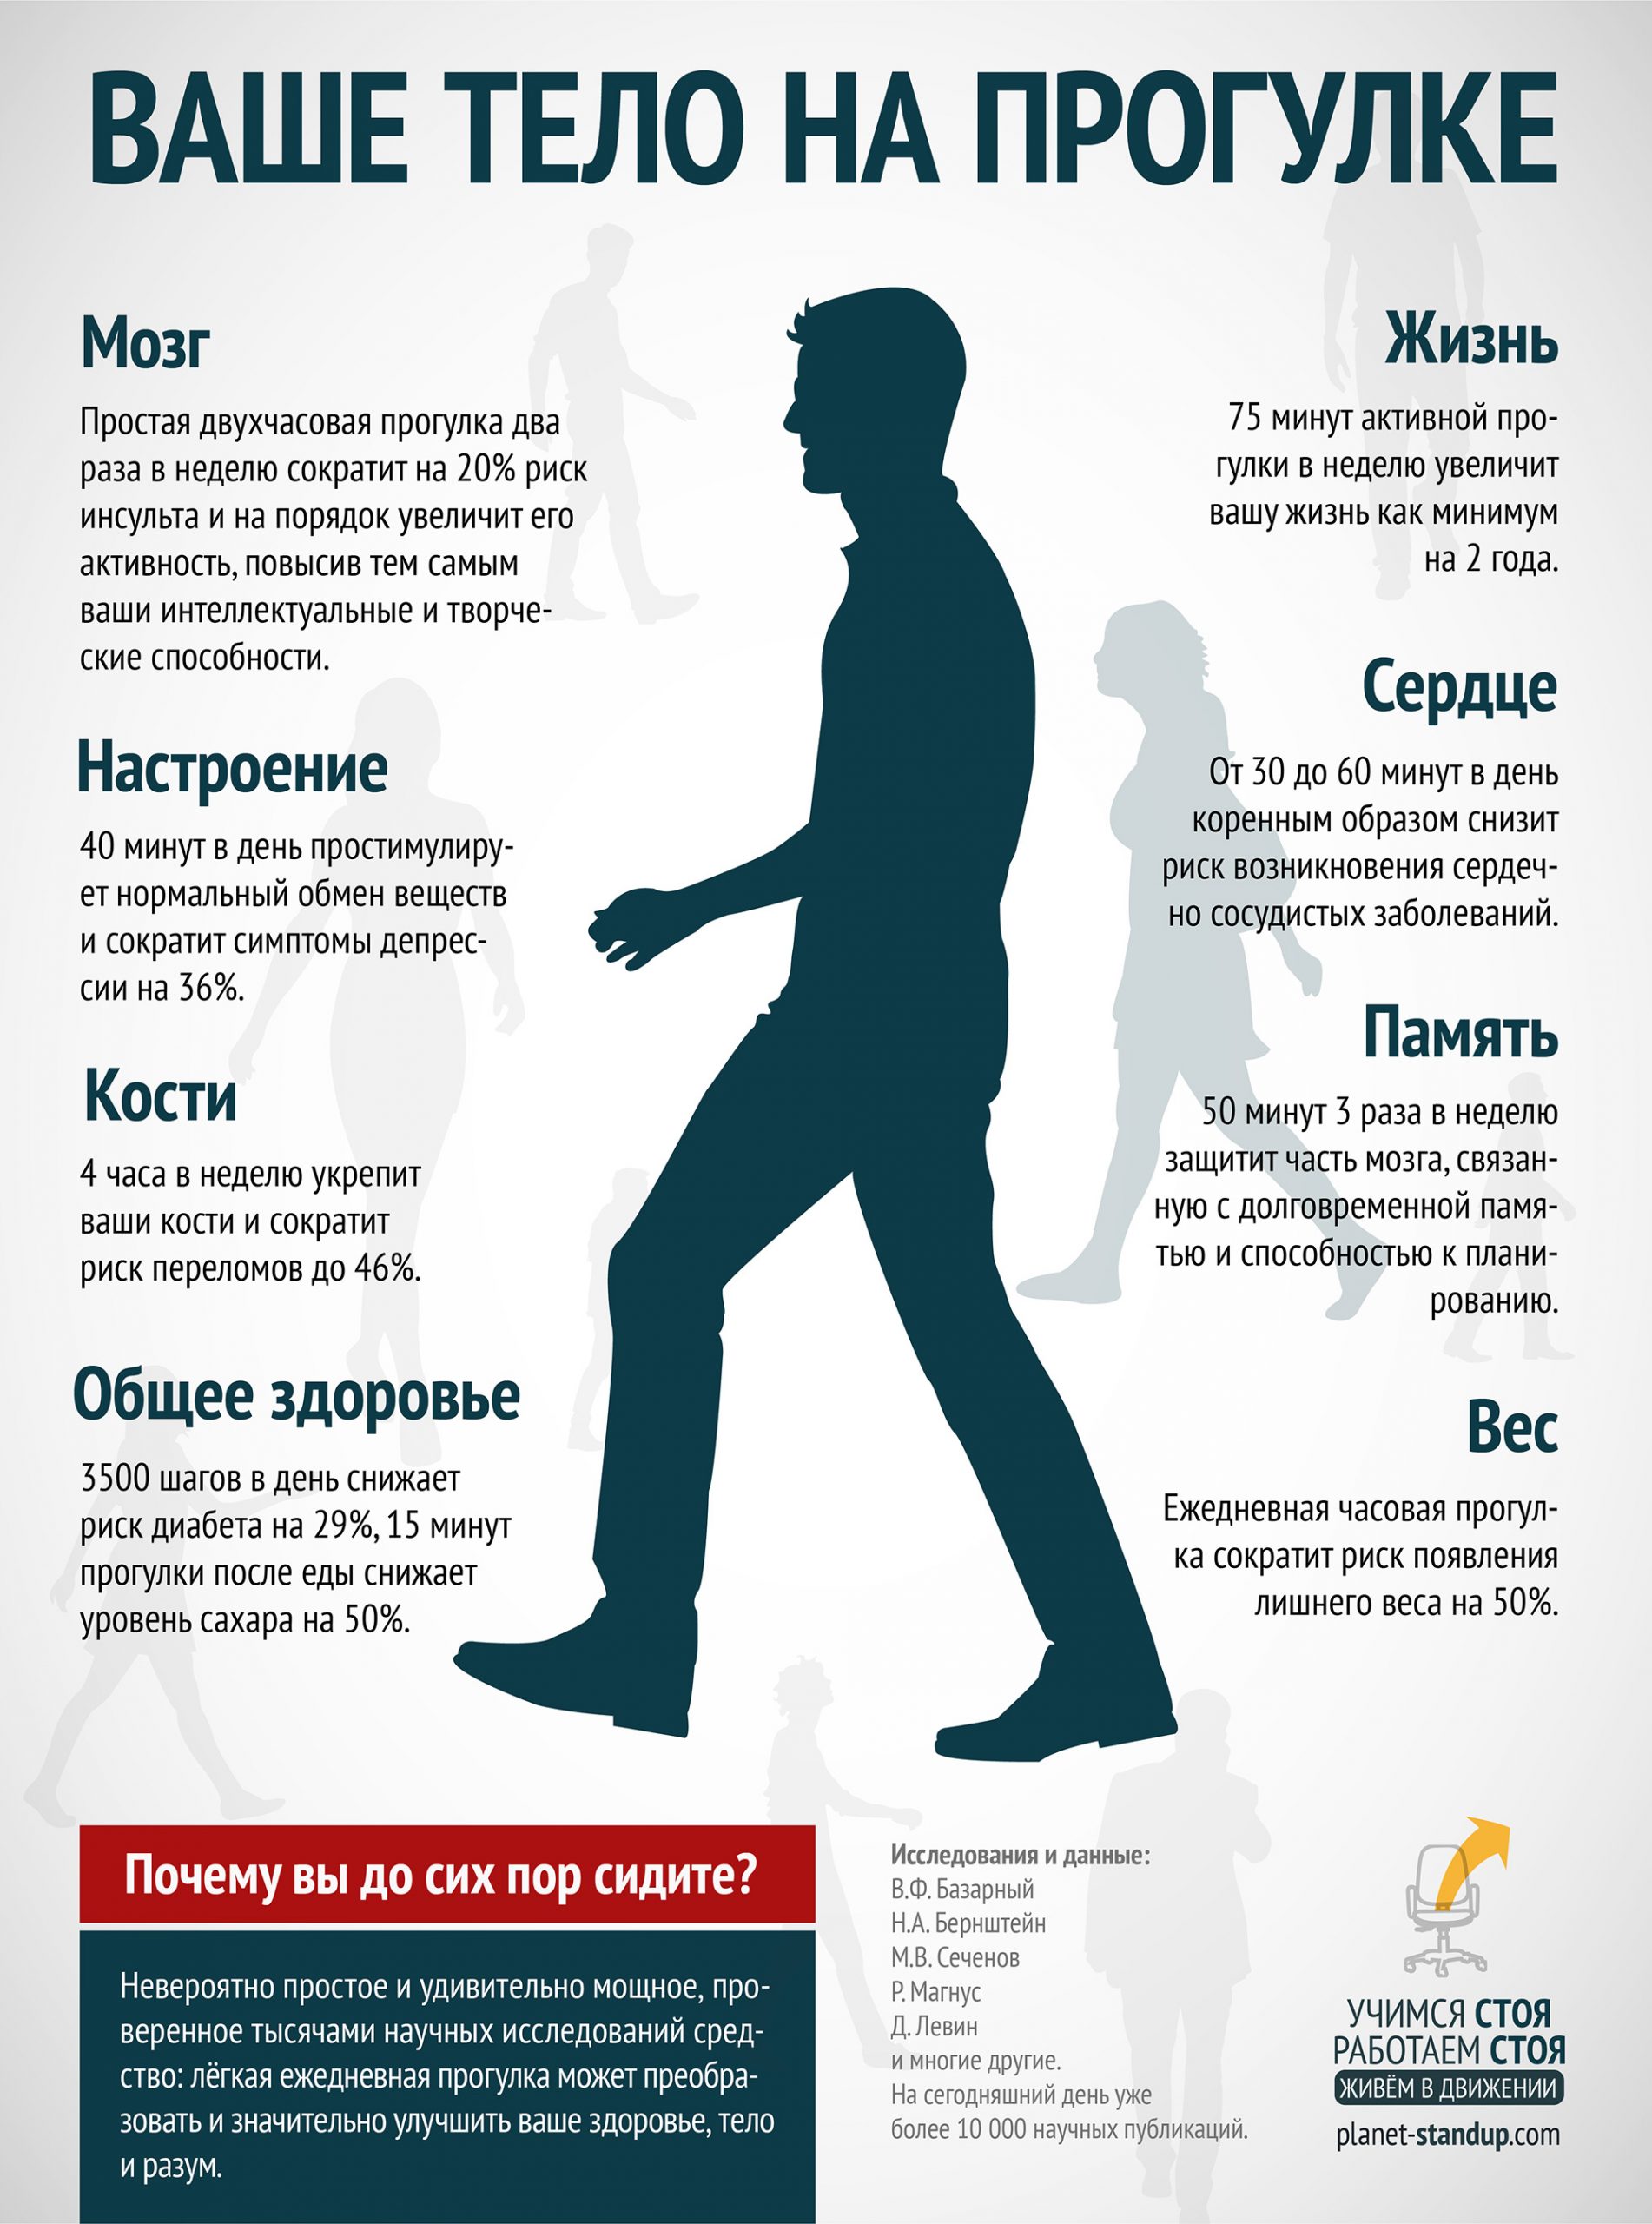 Инфографика: ваше тело на прогулке